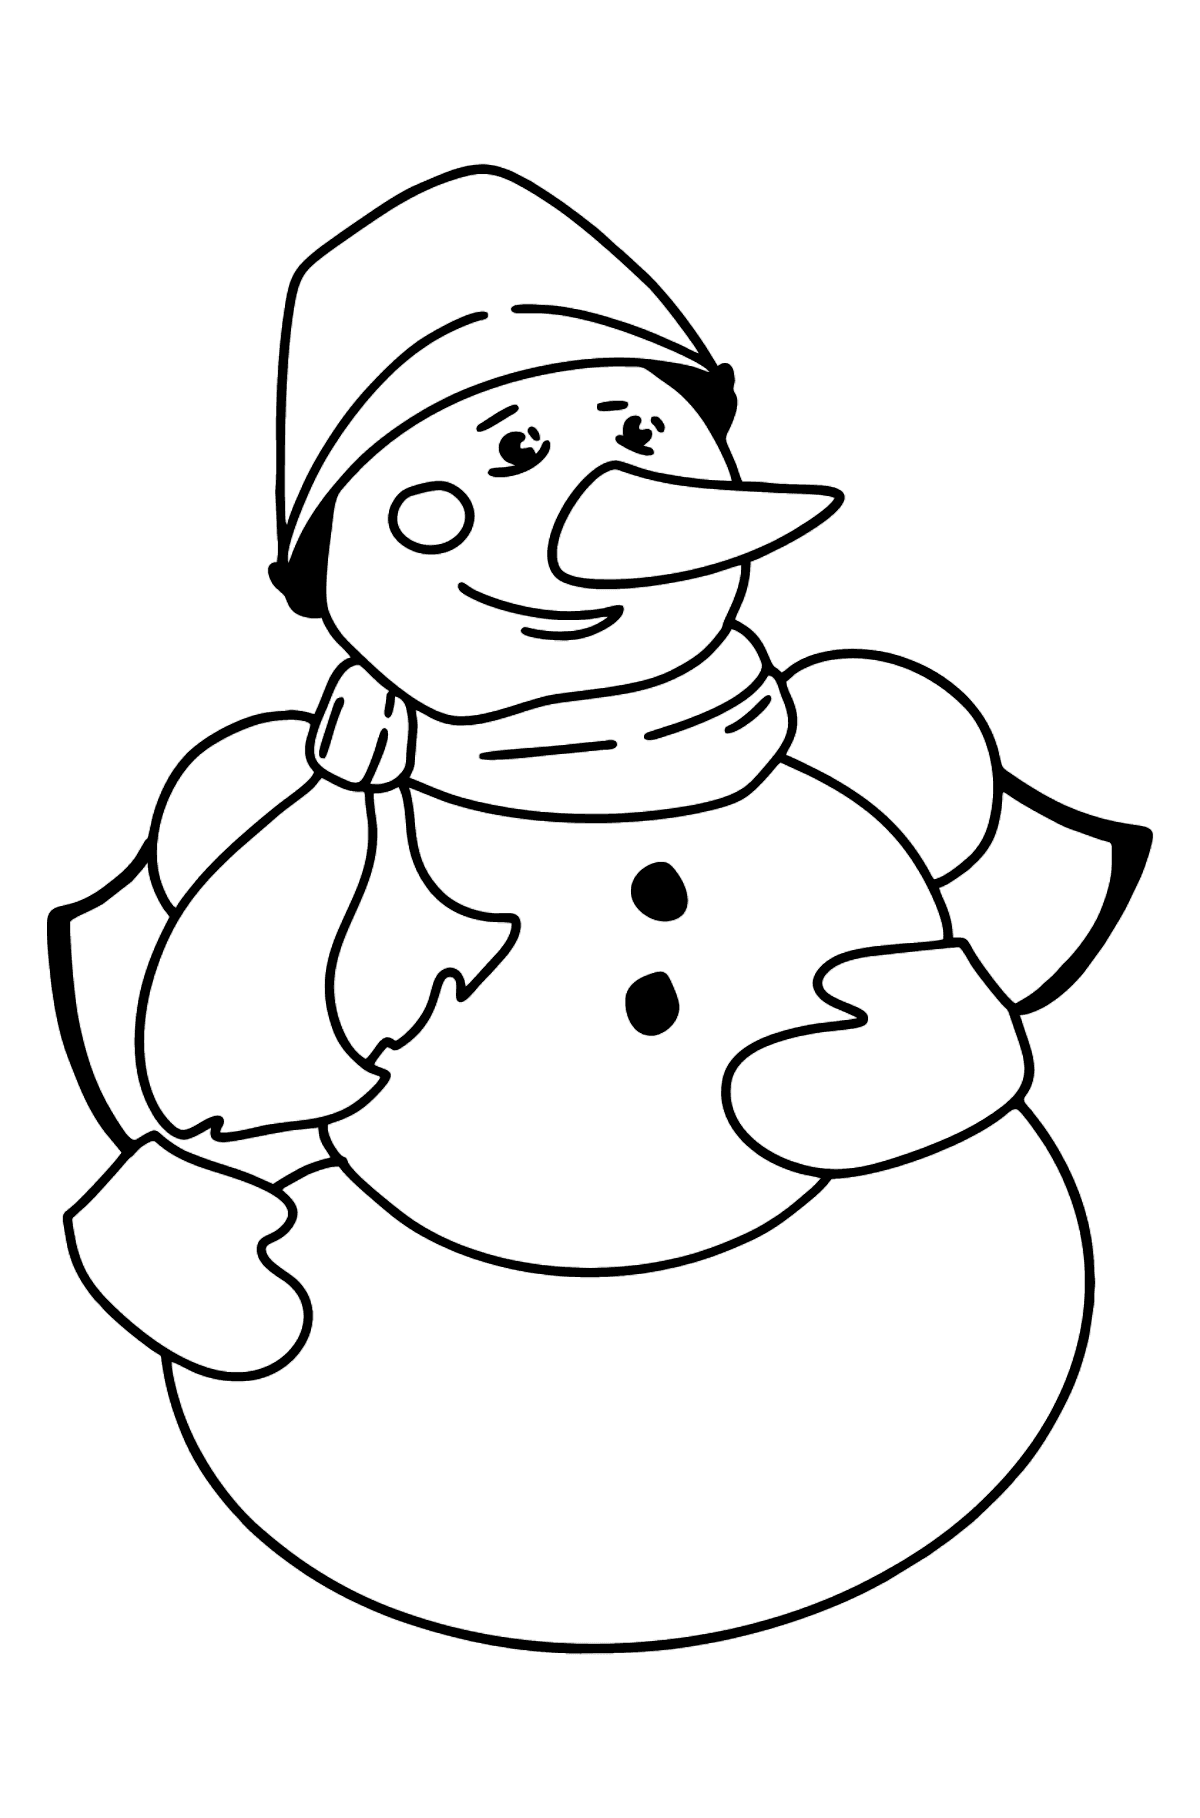 Disegno di pupazzo di neve da colorare - Disegni da colorare per bambini